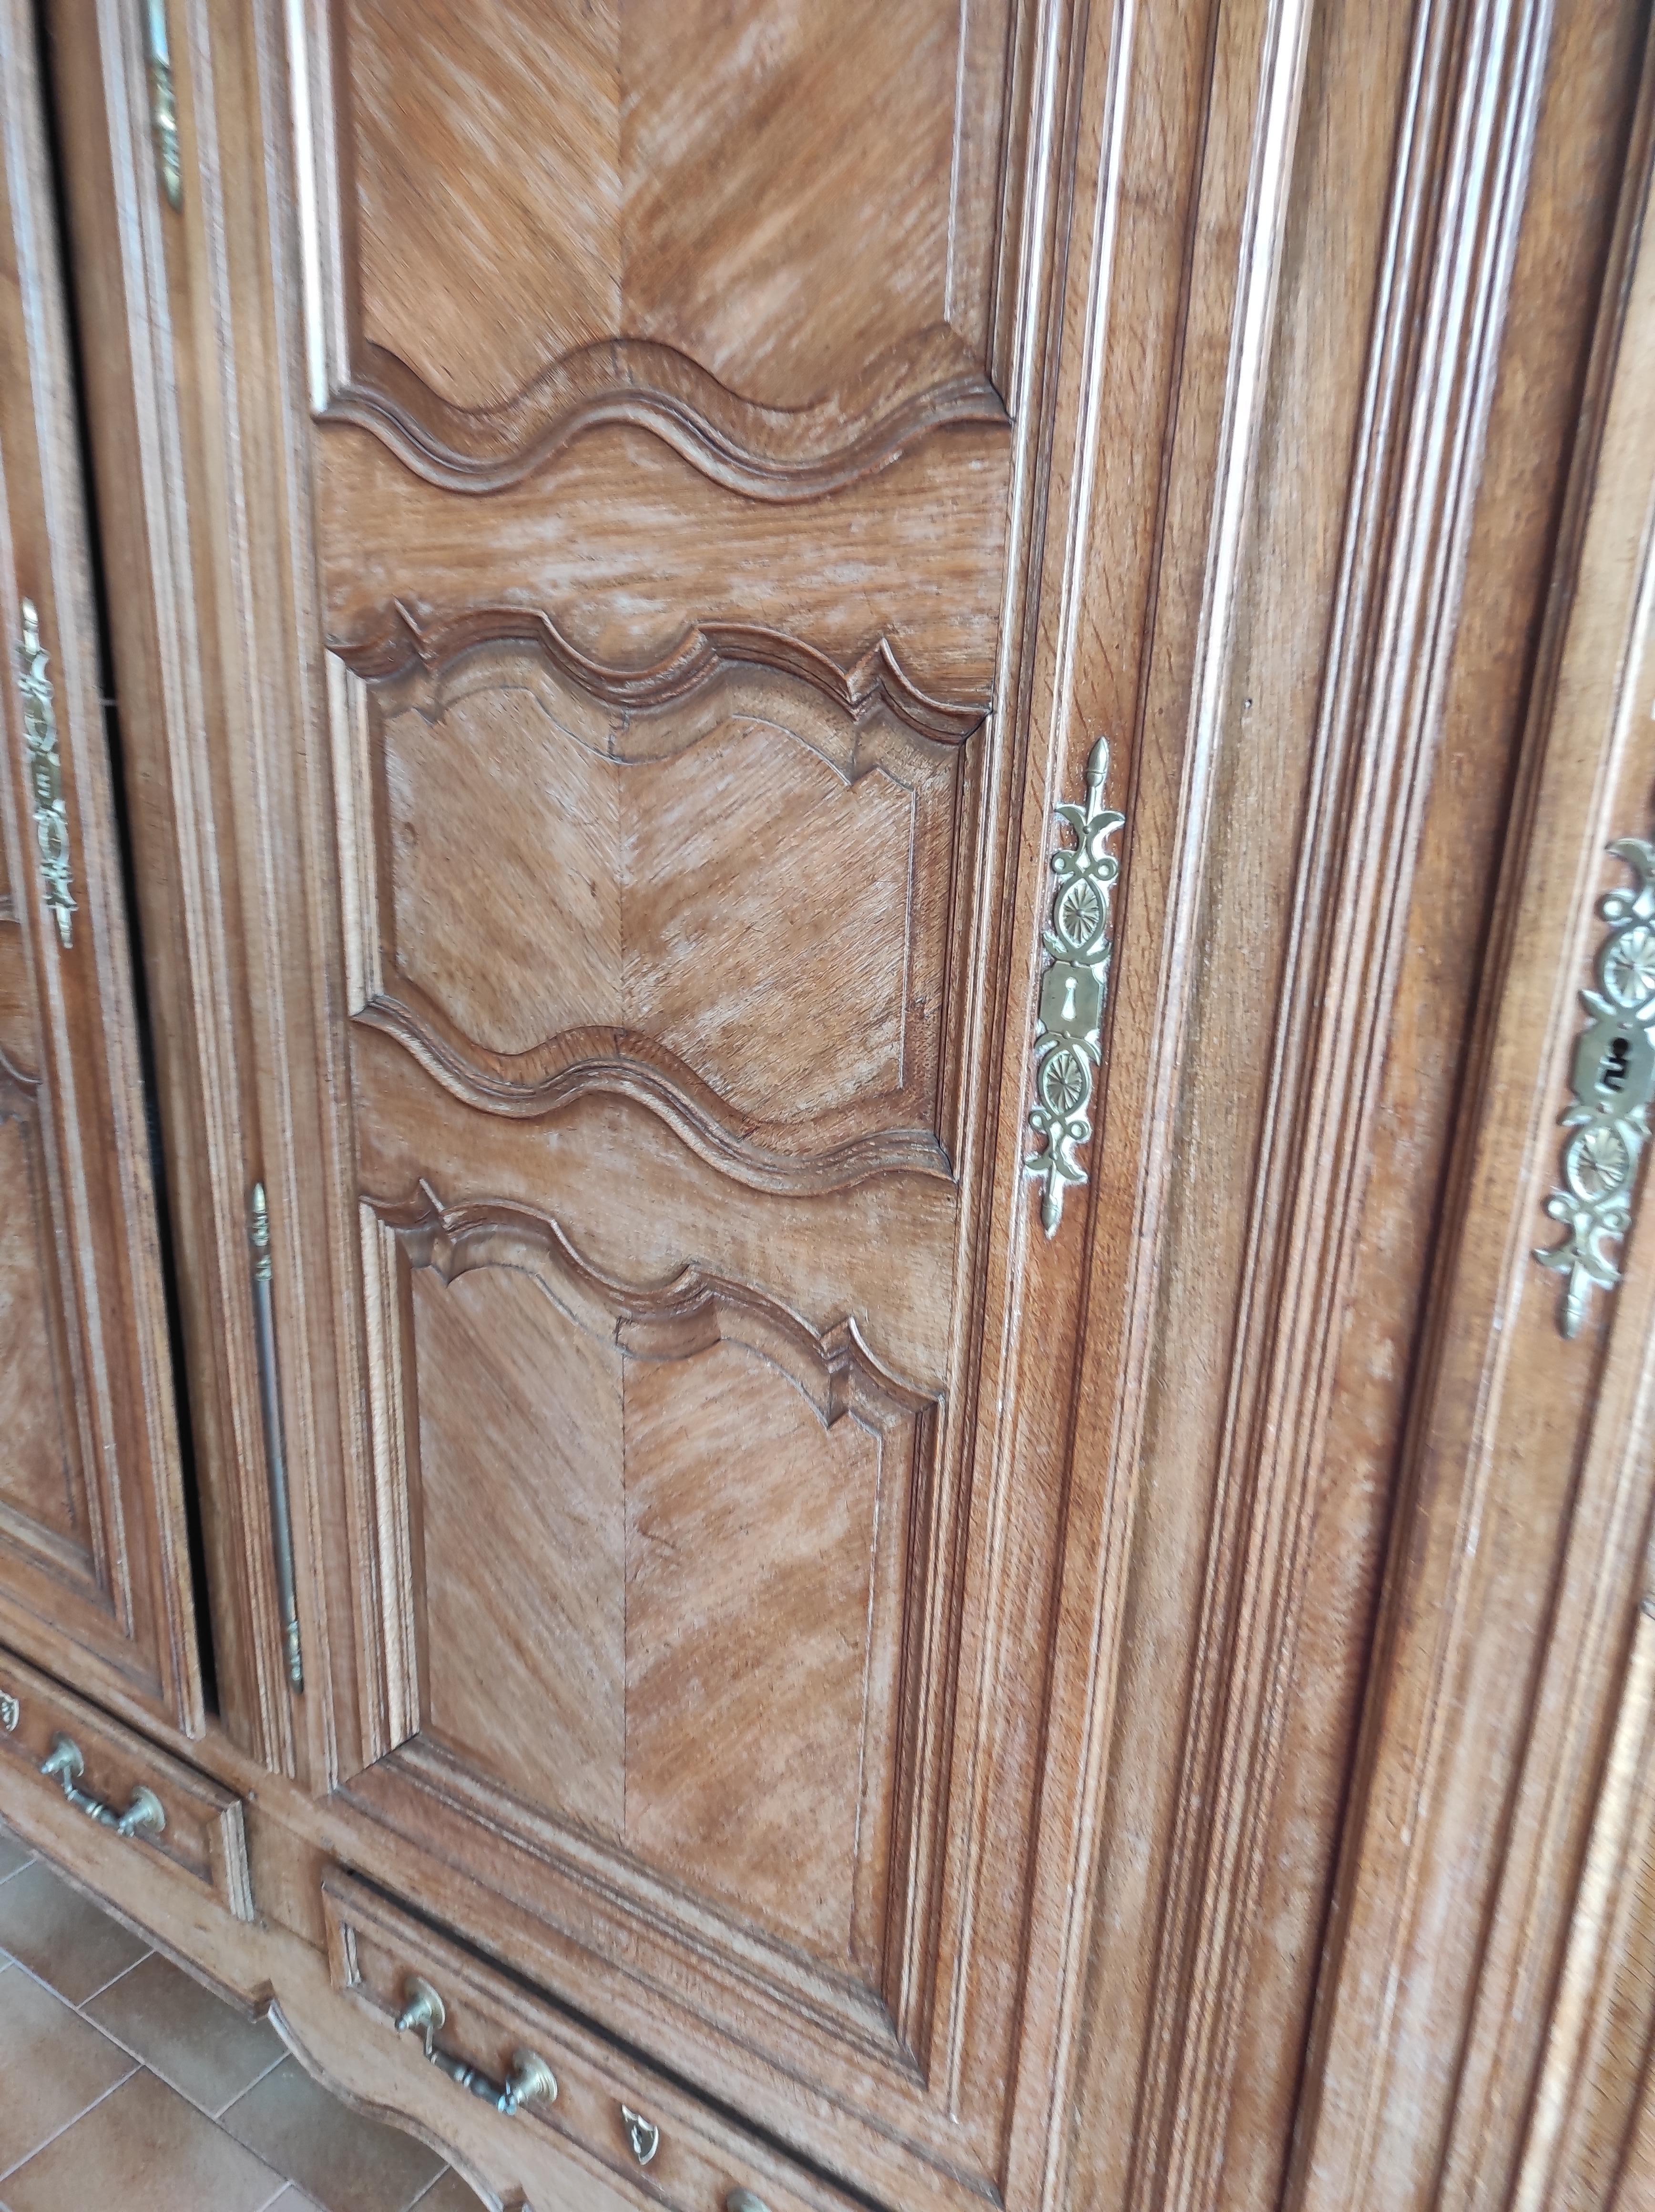 Dreitüriger Kleiderschrank aus Eichenholz aus der französischen Provence.
Es ist komplett mit originalen internen Regalen kein Mangel bezüglich des Teils 